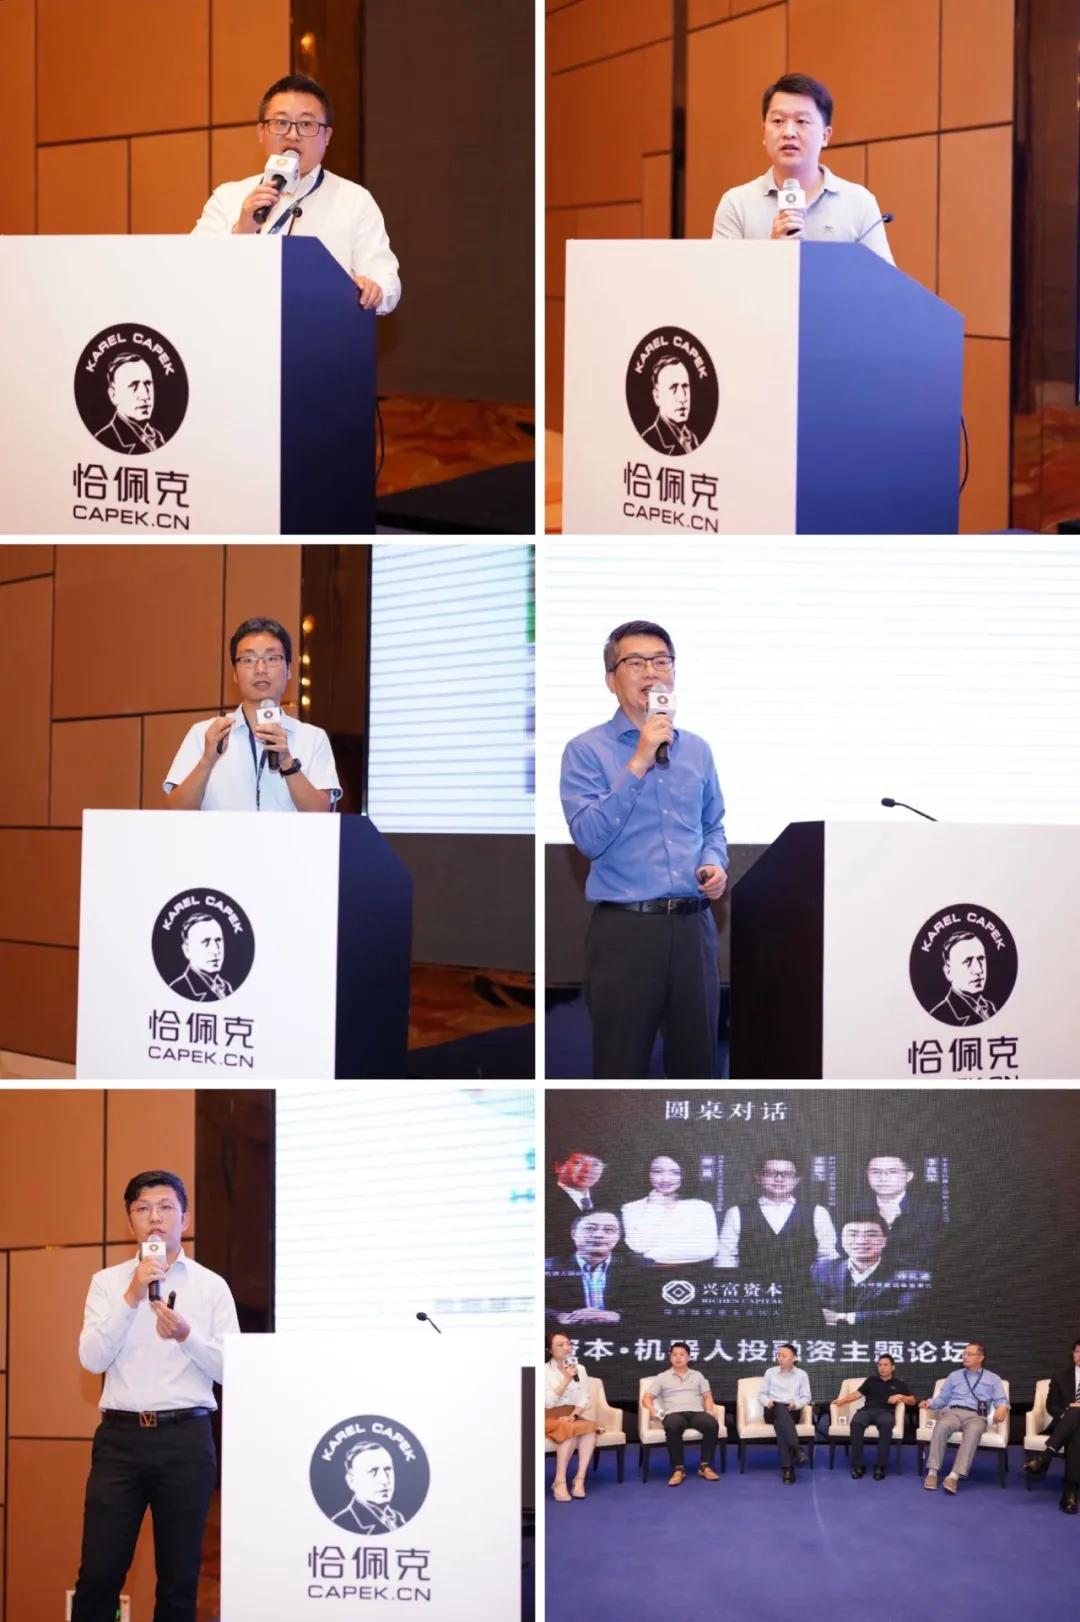 第六届恰佩克颁奖仪式暨第十届中国国际机器人高峰论坛在芜湖盛大举行插图14